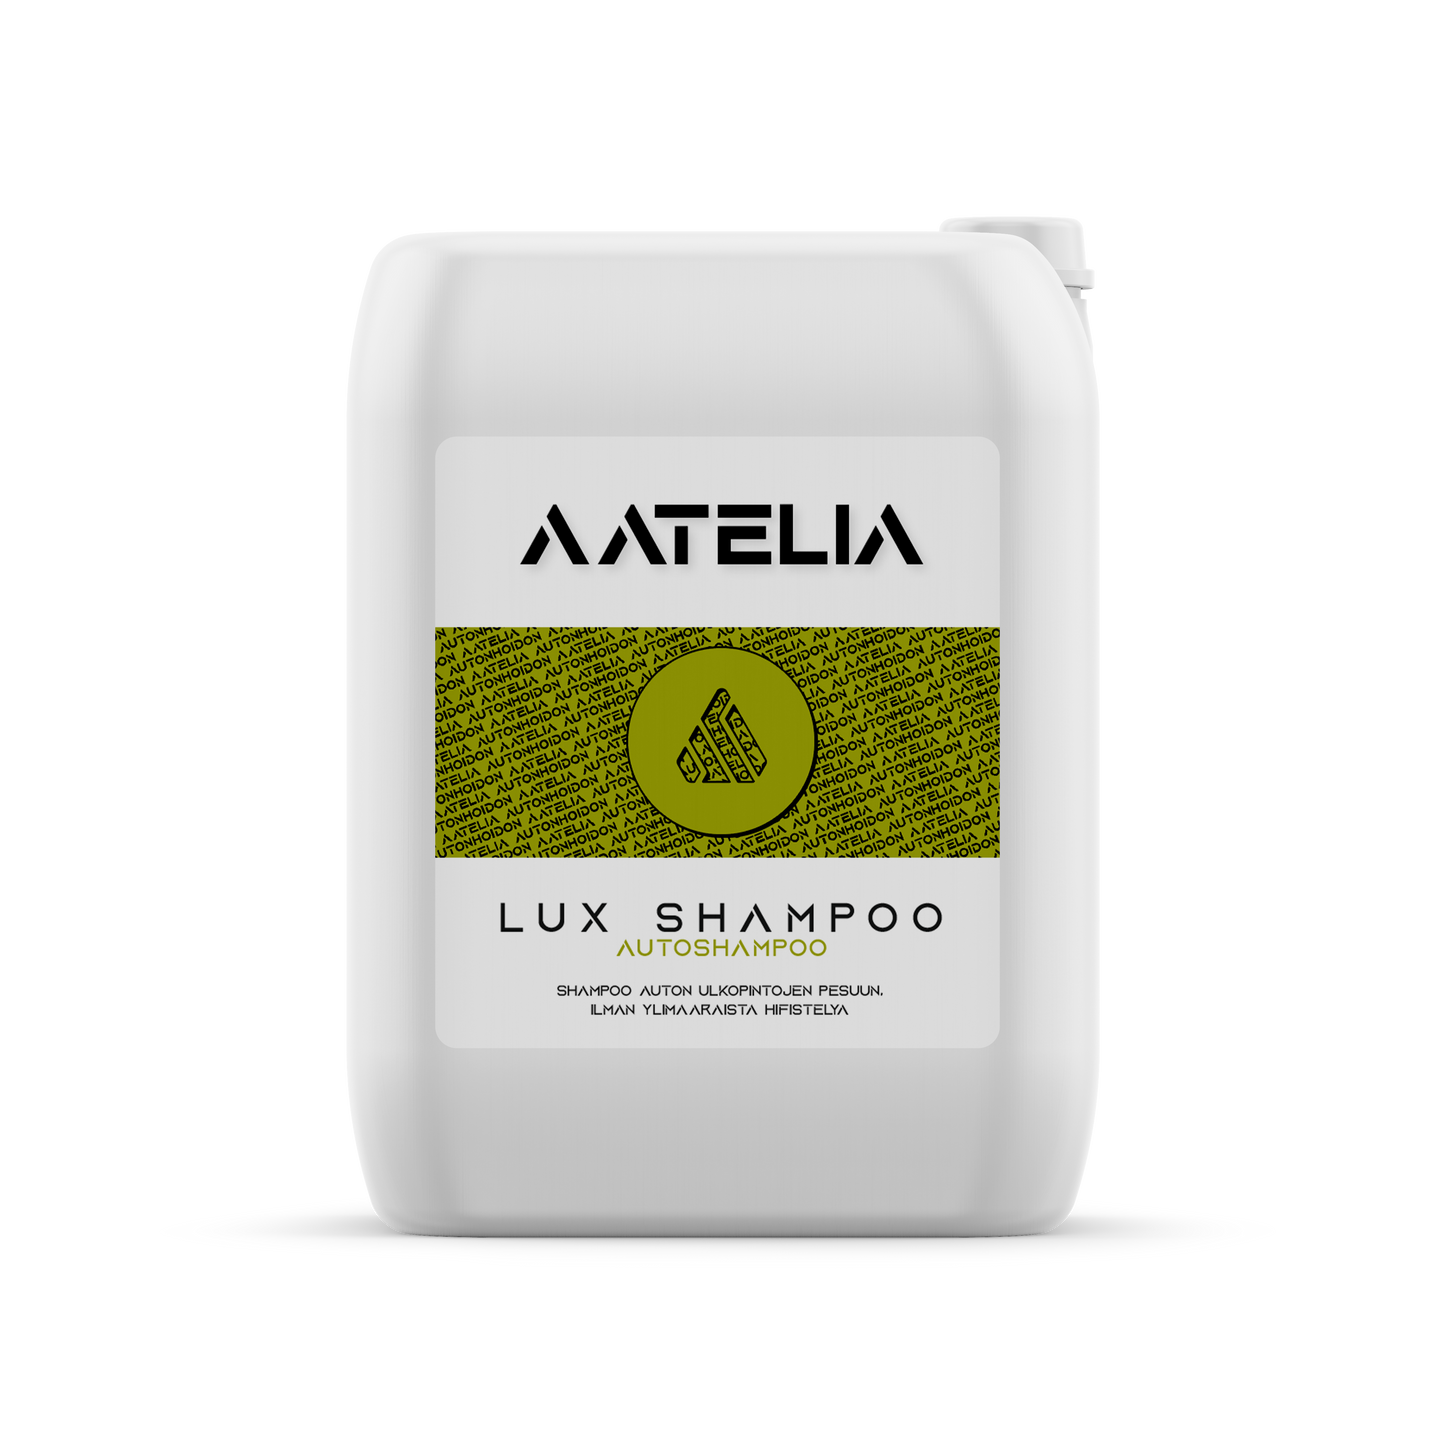 Lux Shampoo - Team Aatelia